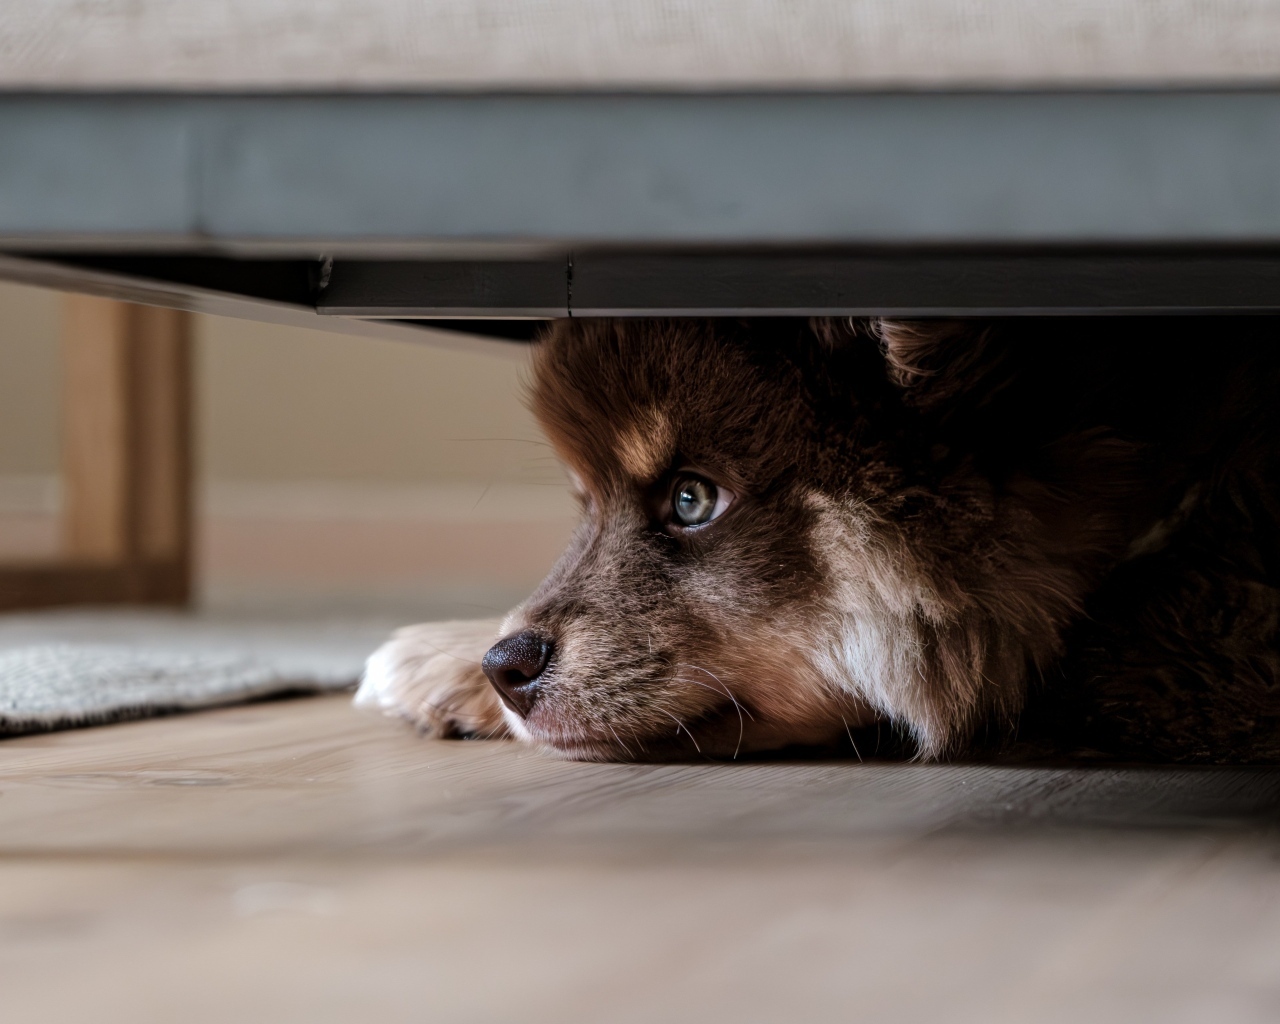 Щенок породы Финский лаппхунд прячется под кроватью